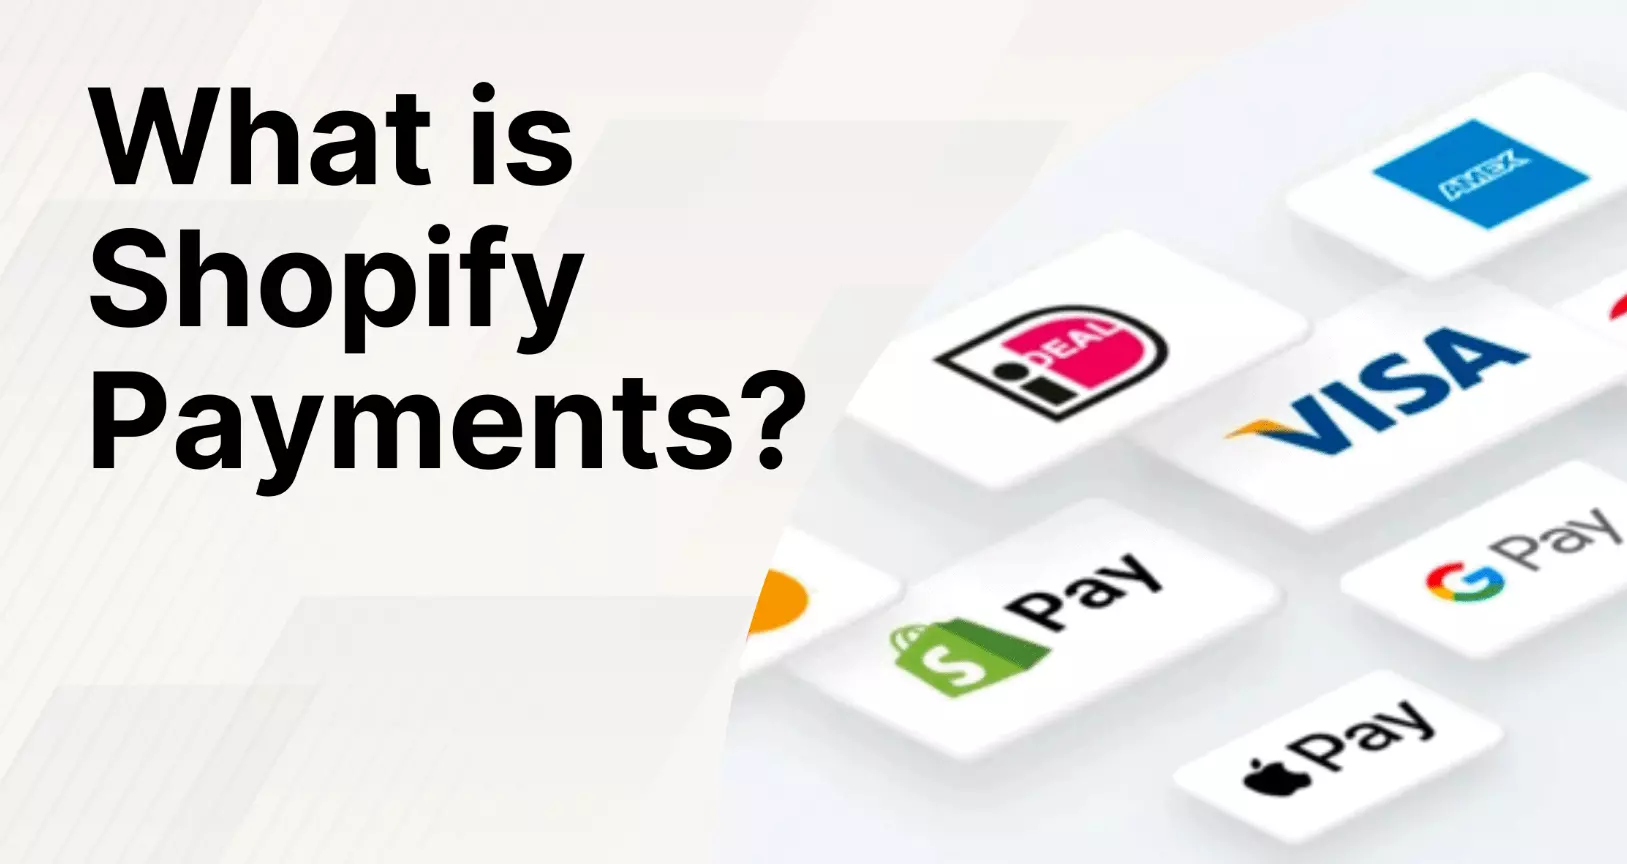 Cổng thanh toán Shopify là gì?